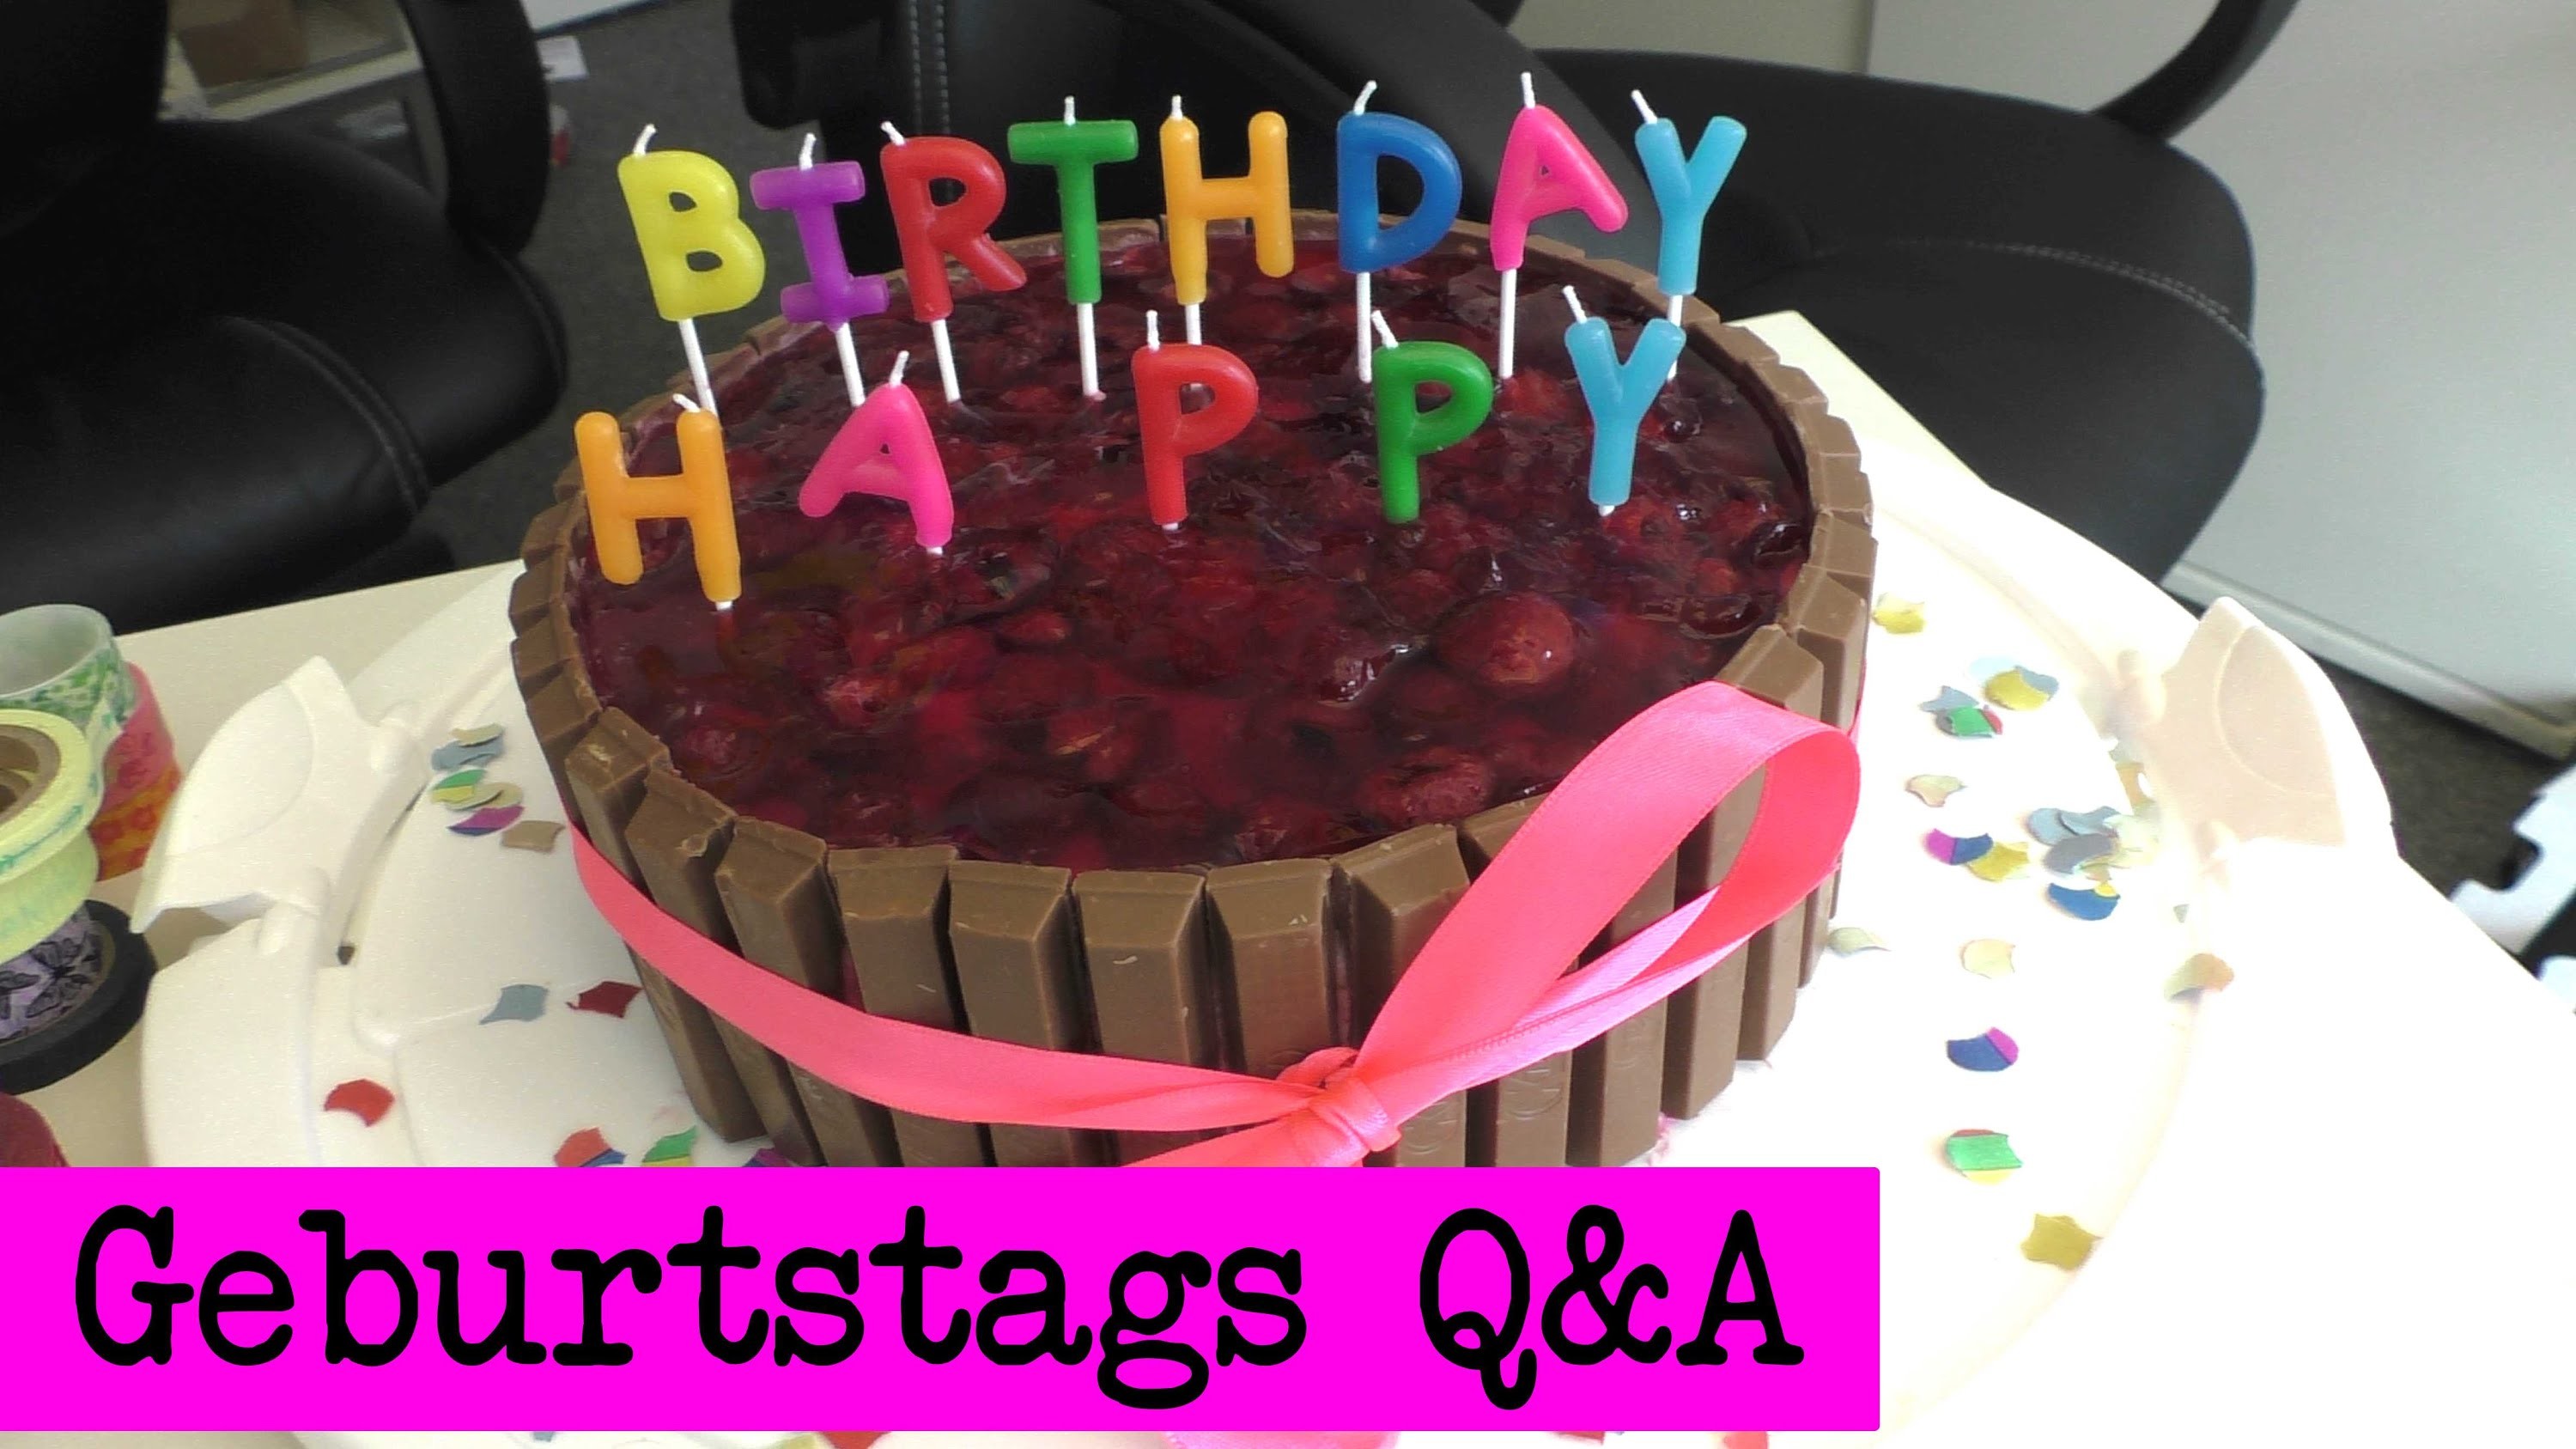 Happy Birthday! Q&A - Antworten. DIY Inspiration Geburtstagsvideo. Evas & Kathis Antworten